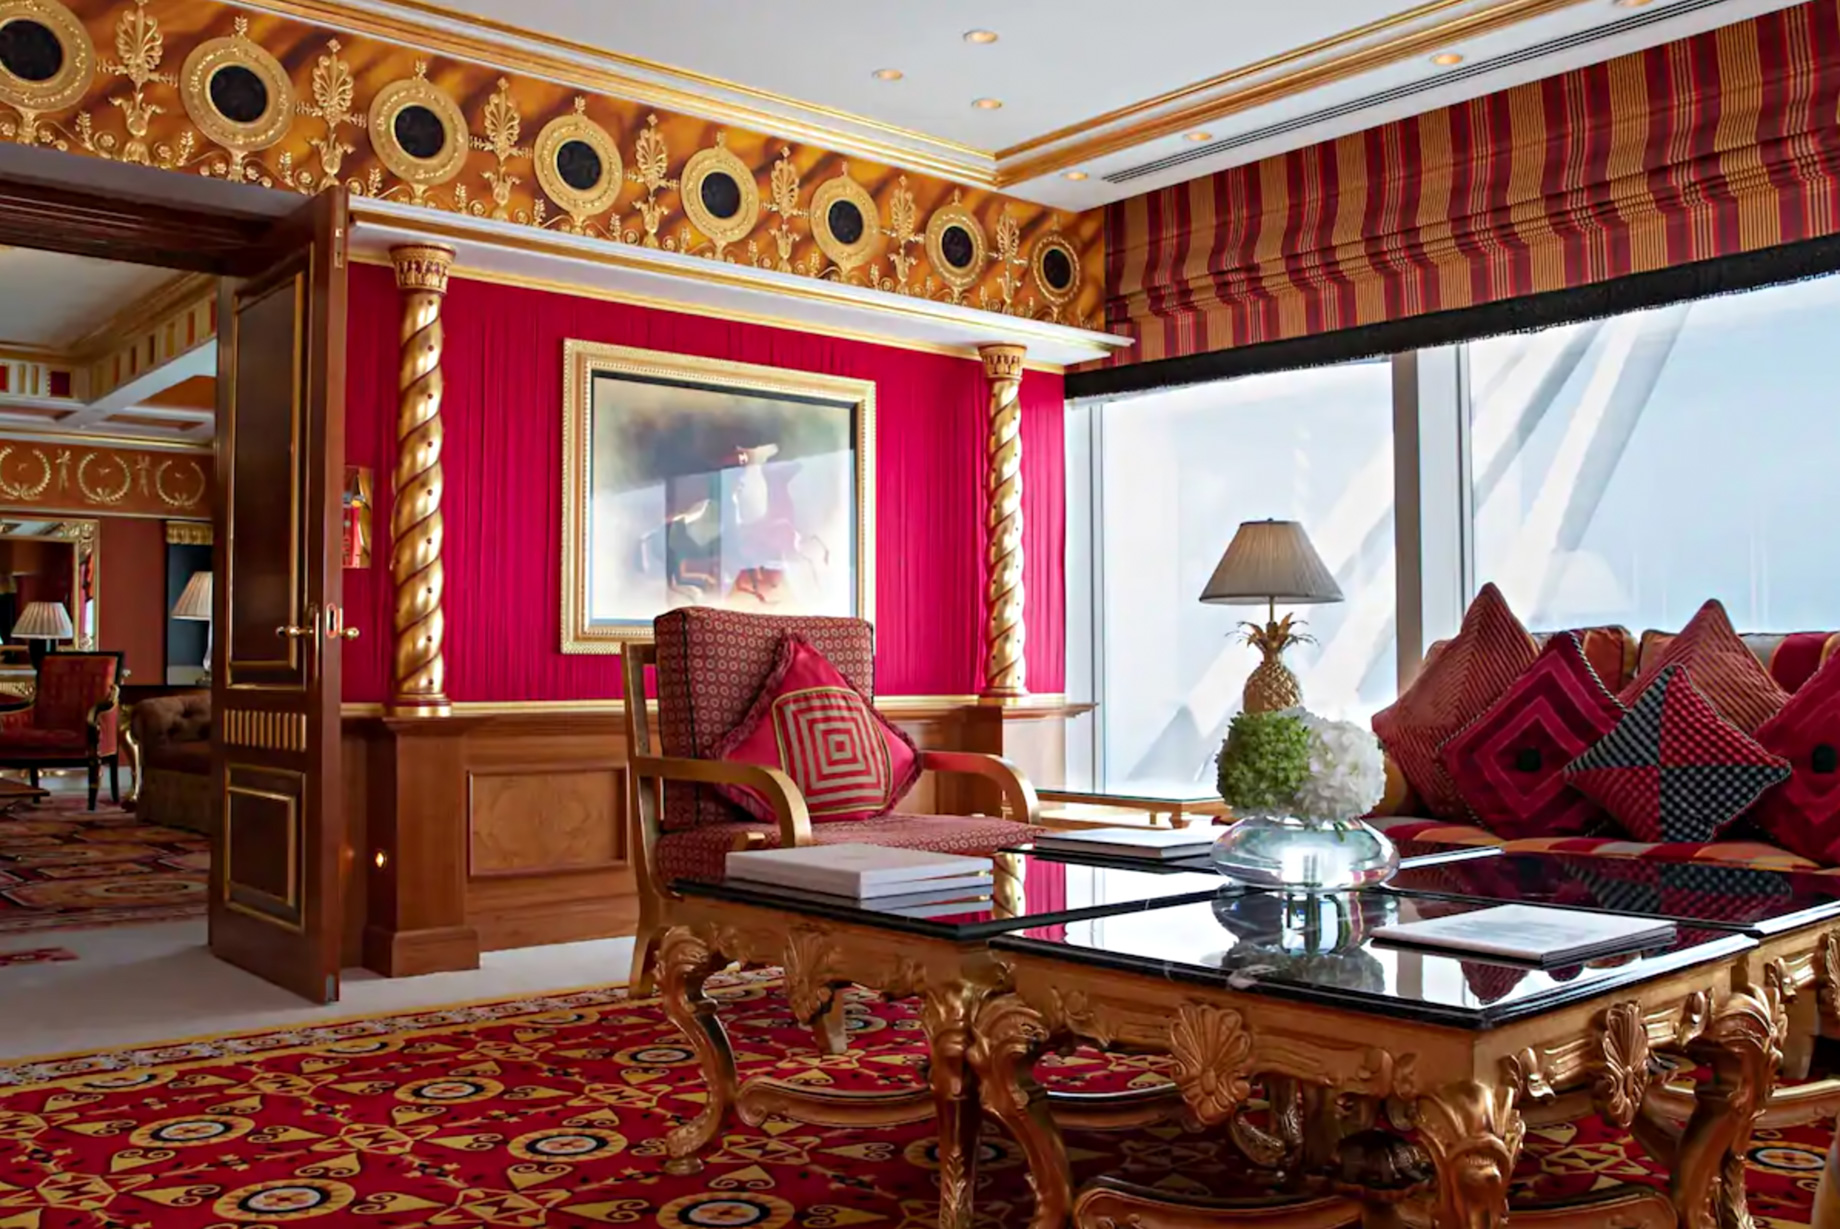 Burj Al Arab Jumeirah Hotel – Dubai, UAE – Royal Suite